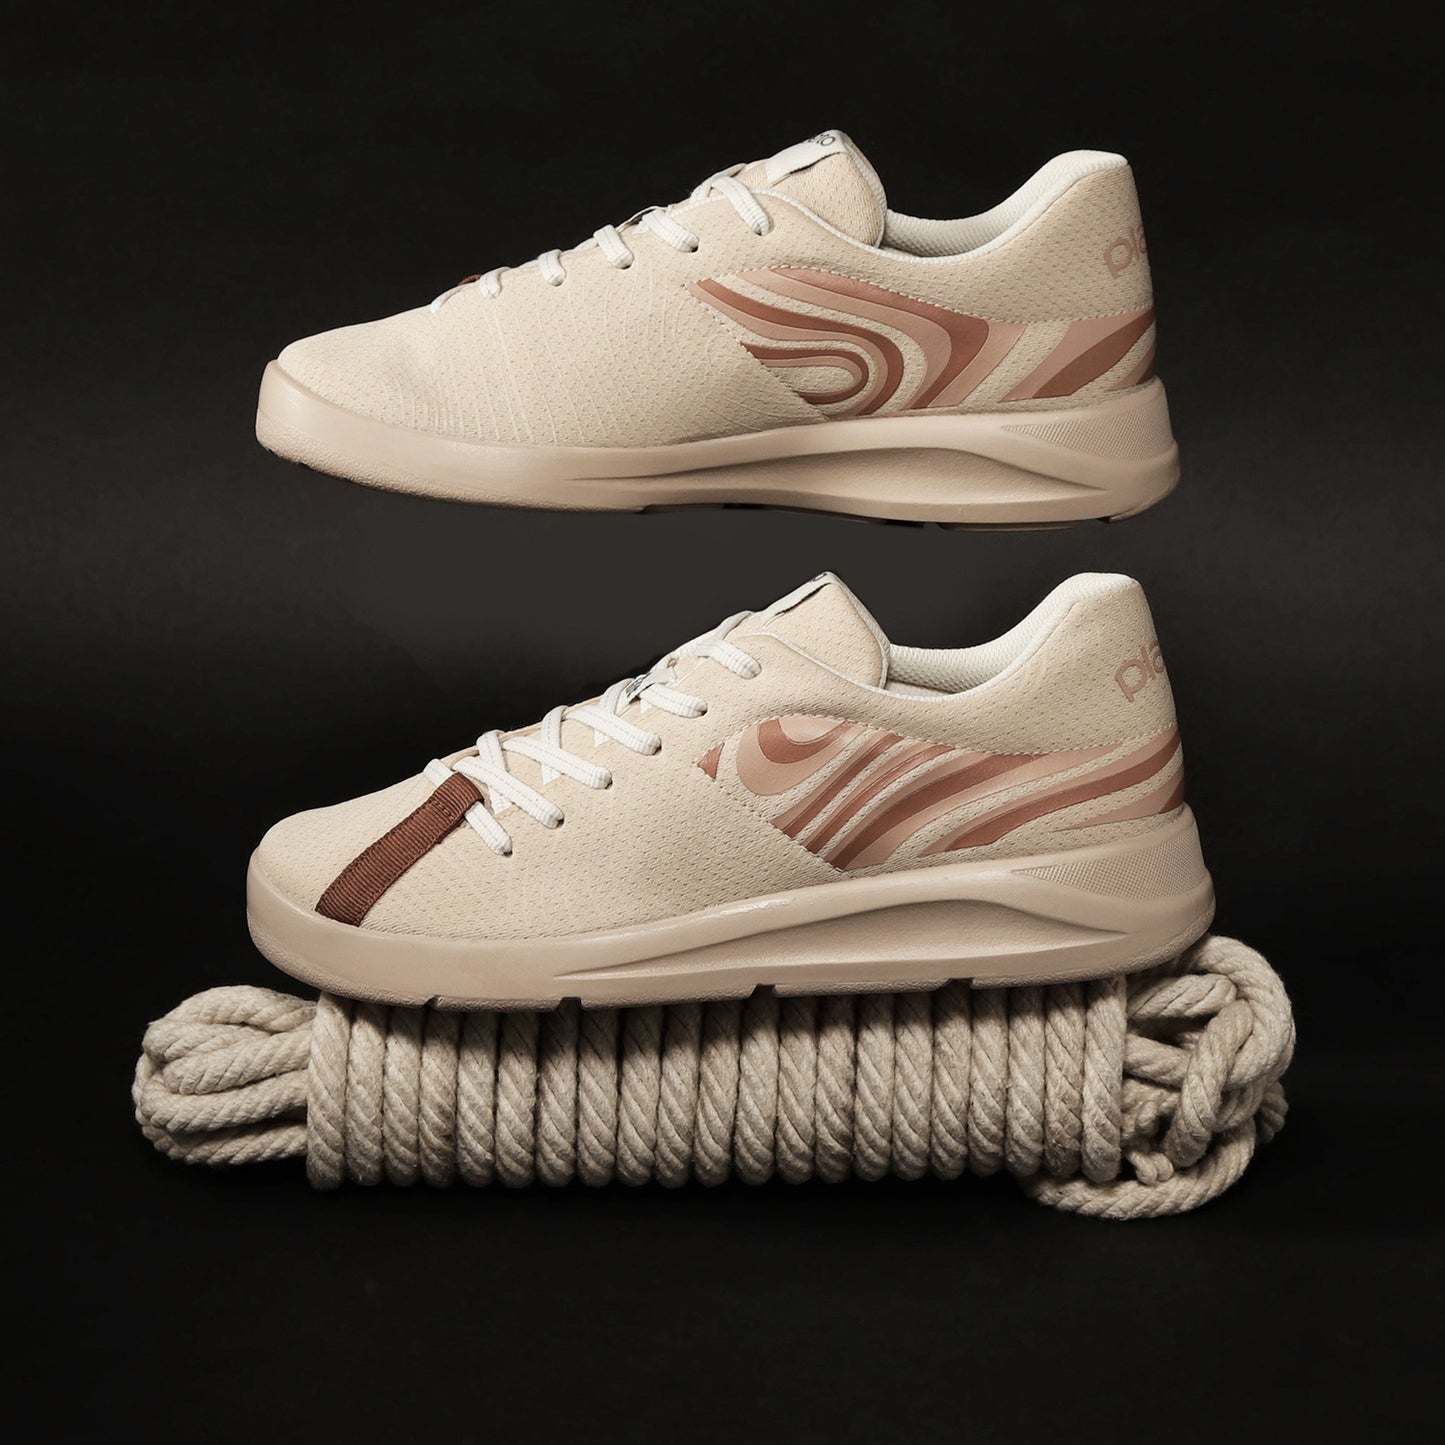 Coast Women's Multiplay Sneakers - Beige / Brown